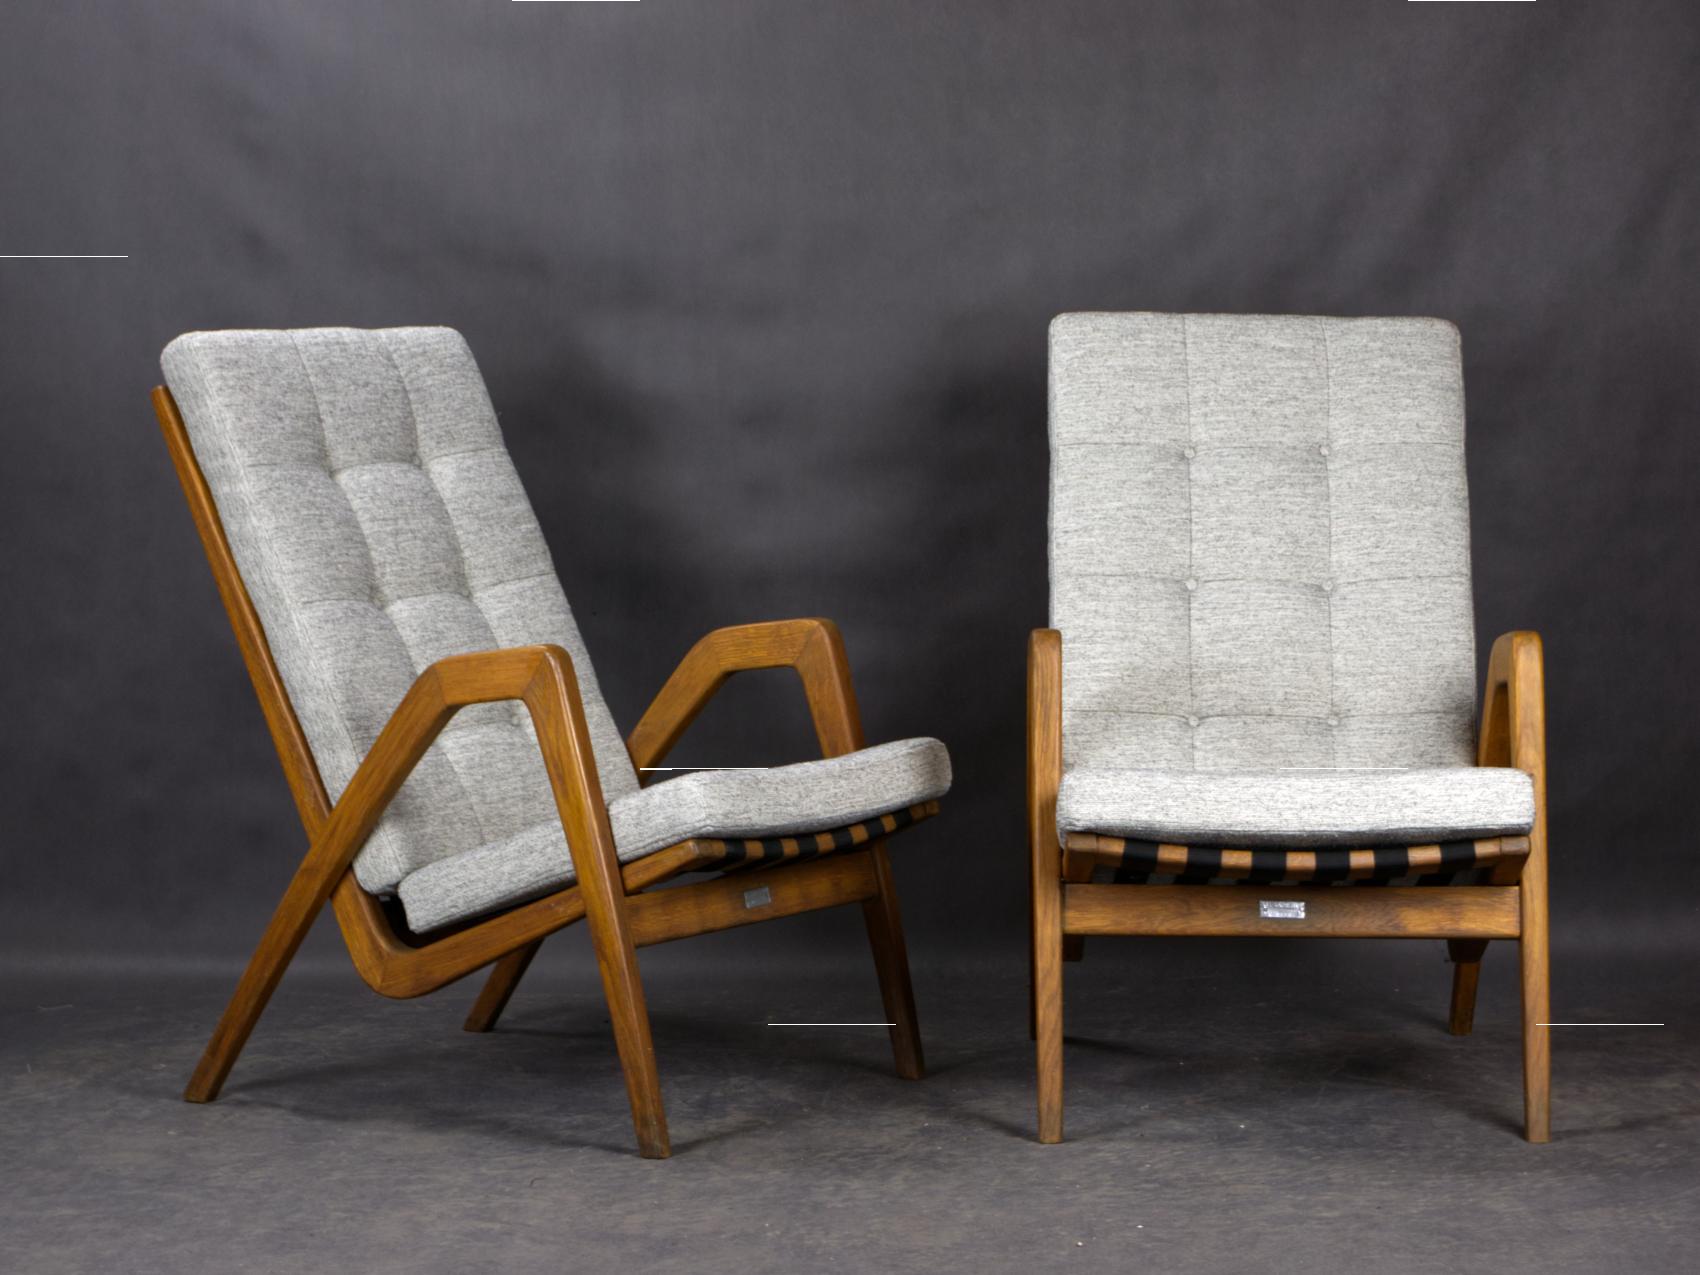 Les fauteuils ont été conçus dans les années 1950 par l'architecte tchèque Ján Vanek pour l'ULUV (siège de l'art populaire) en Tchécoslovaquie. Les fauteuils figuraient dans l'inventaire du cinéma d'État tchécoslovaque (studios de cinéma